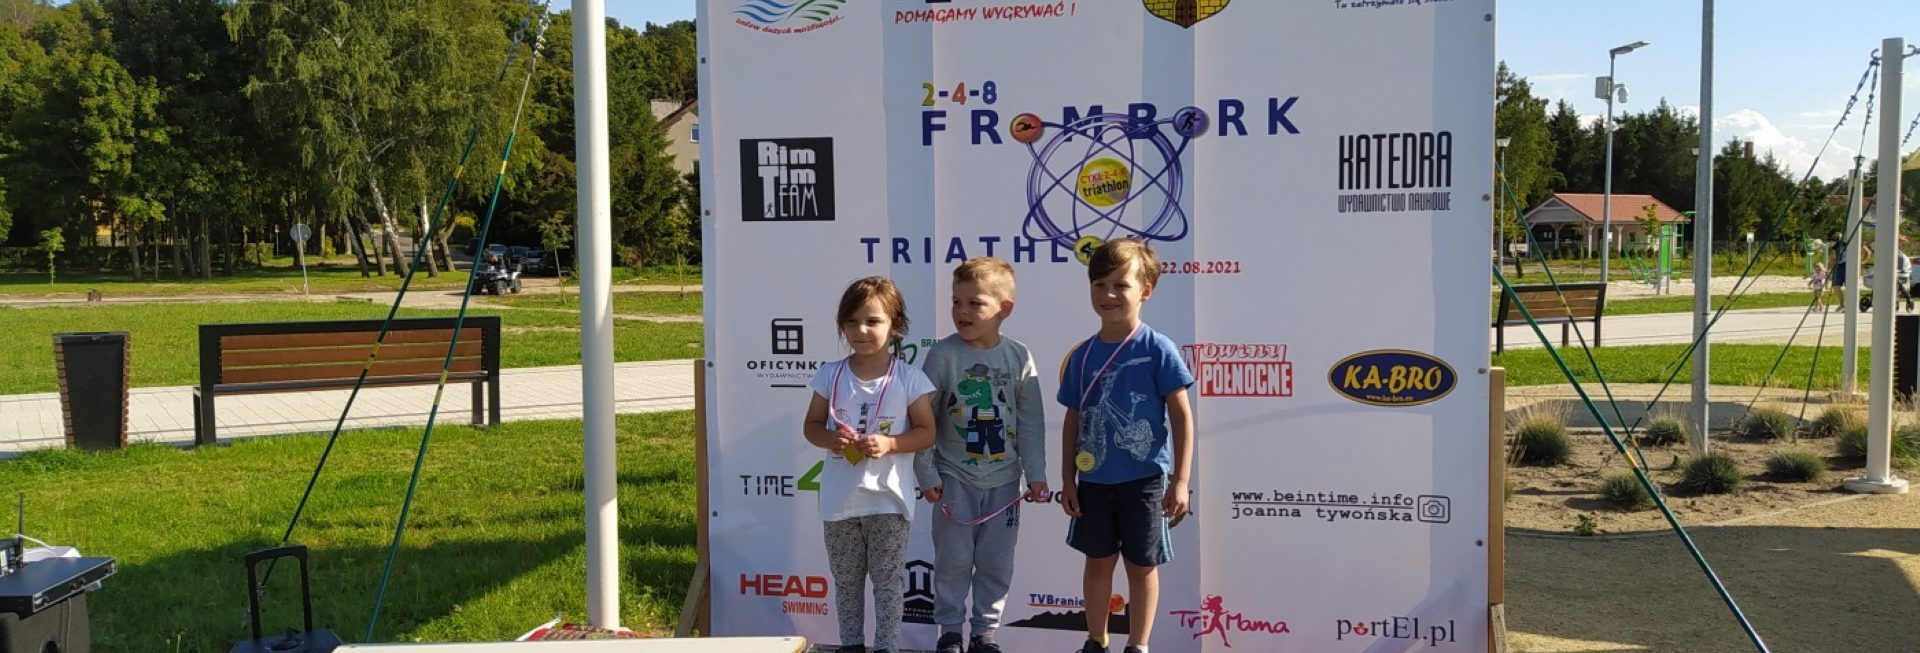 Plakat zapraszający do Fromborka na 2. edycję zawodów 2-4-8 Triathlon FROMBORK dla dzieci 2023.